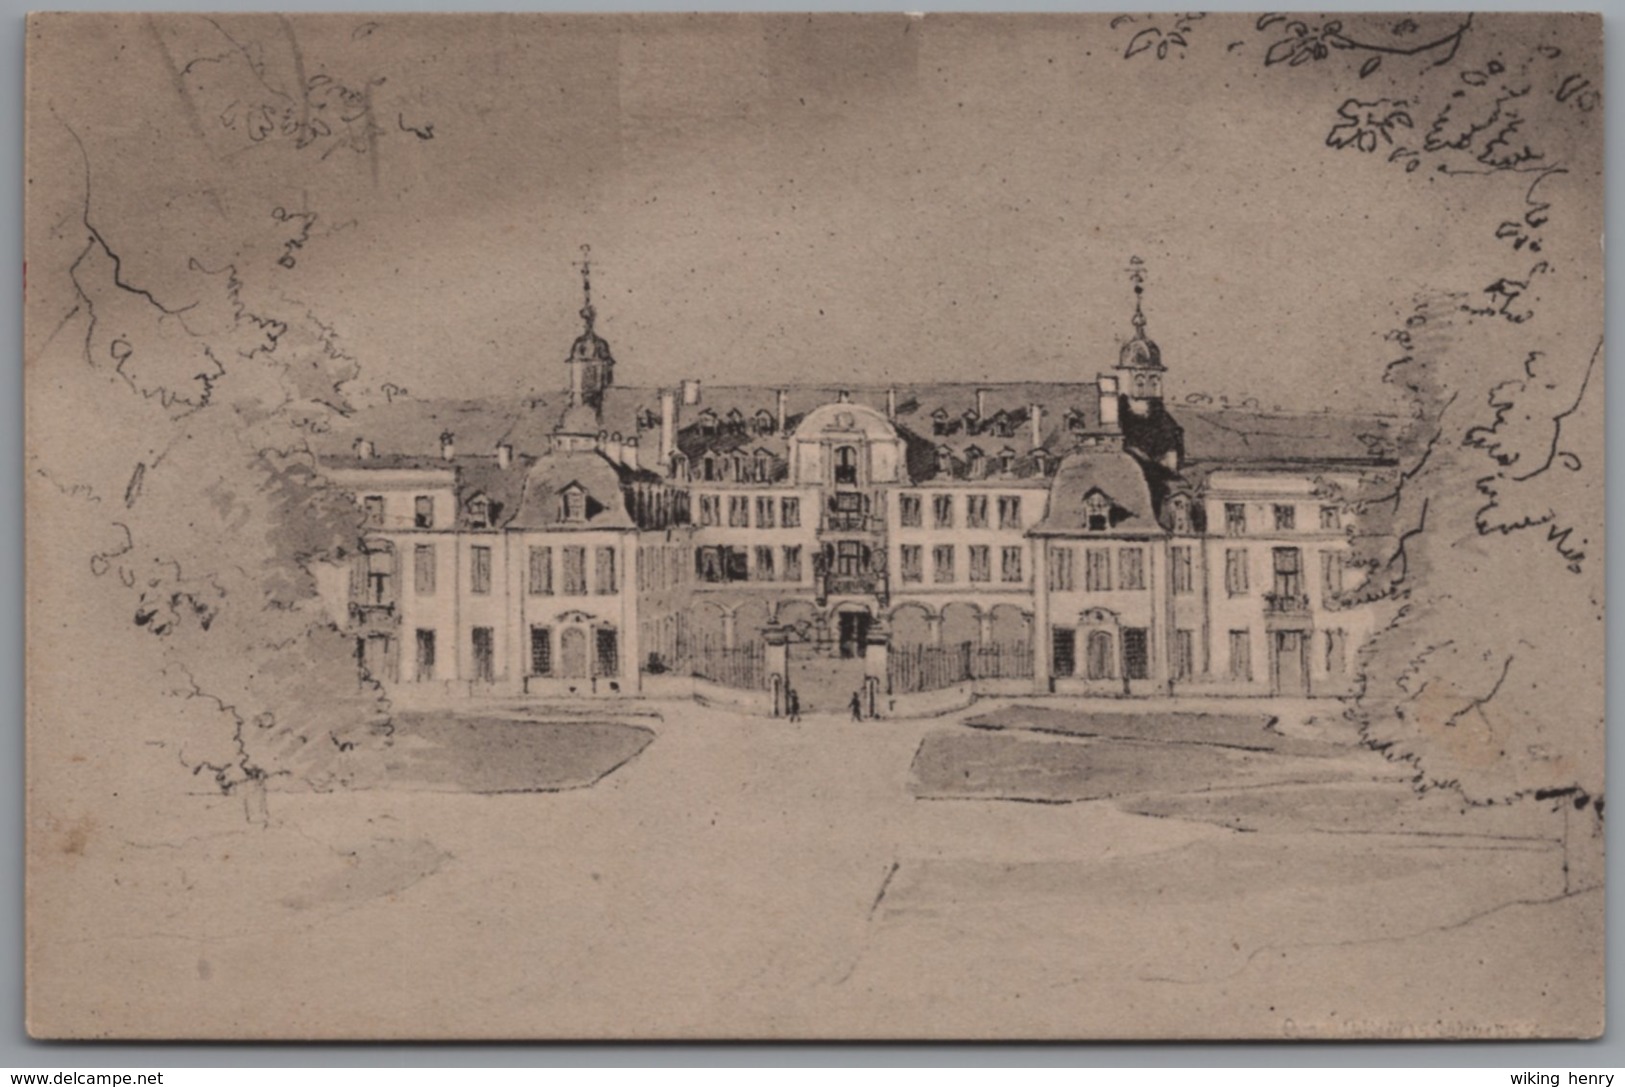 Diez - S/w Schloß Oranienstein Von Der Südseite Nach Einer Zeichnung Des O.R. Jacobi 1852 - Diez